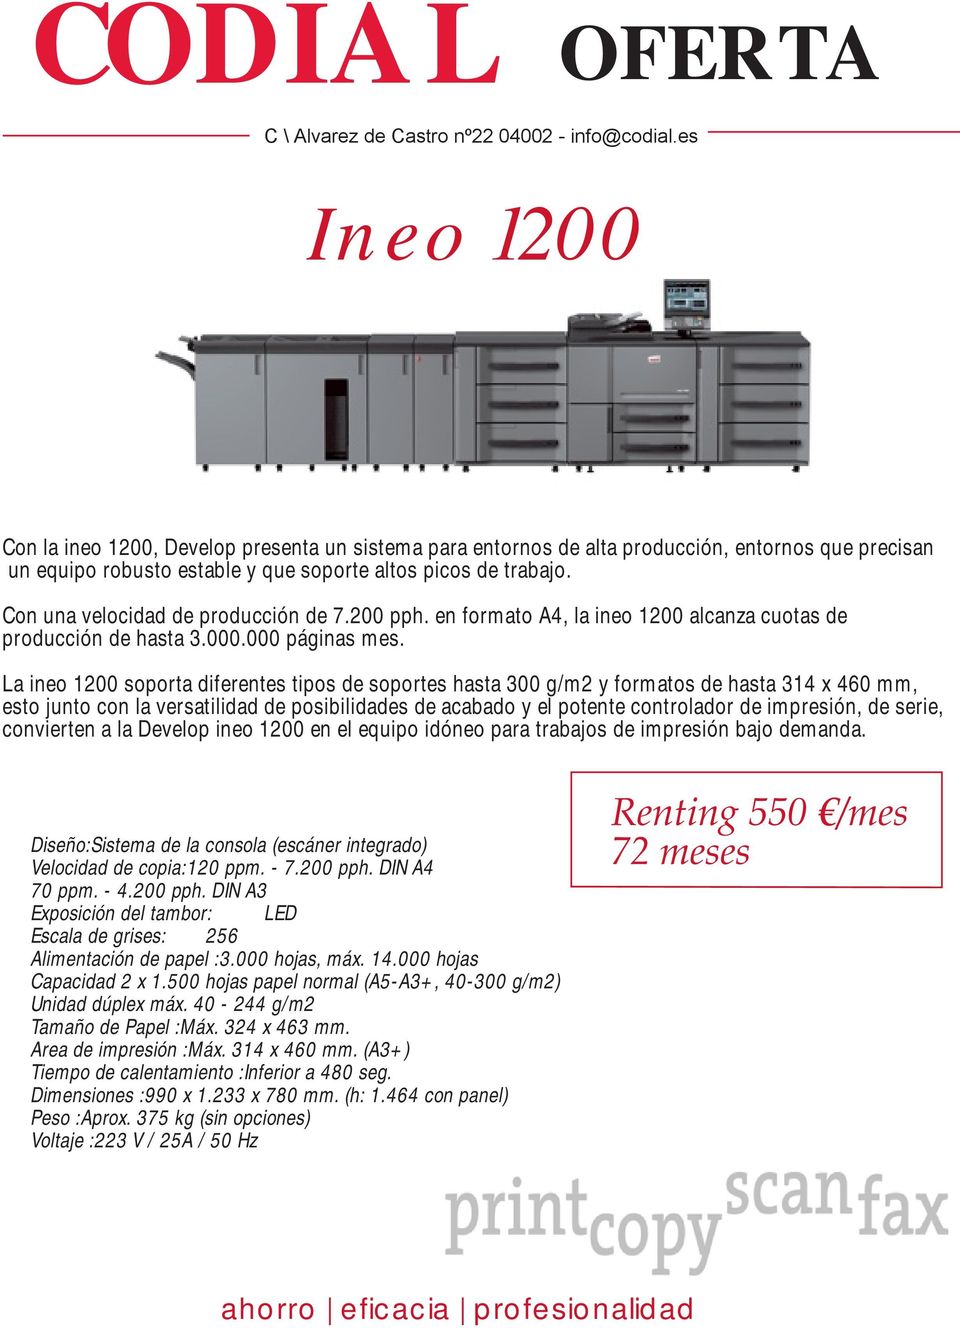 La ineo 1200 soporta diferentes tipos de soportes hasta 300 g/m2 y formatos de hasta 314 x 460 mm, esto junto con la versatilidad de posibilidades de acabado y el potente controlador de impresión, de